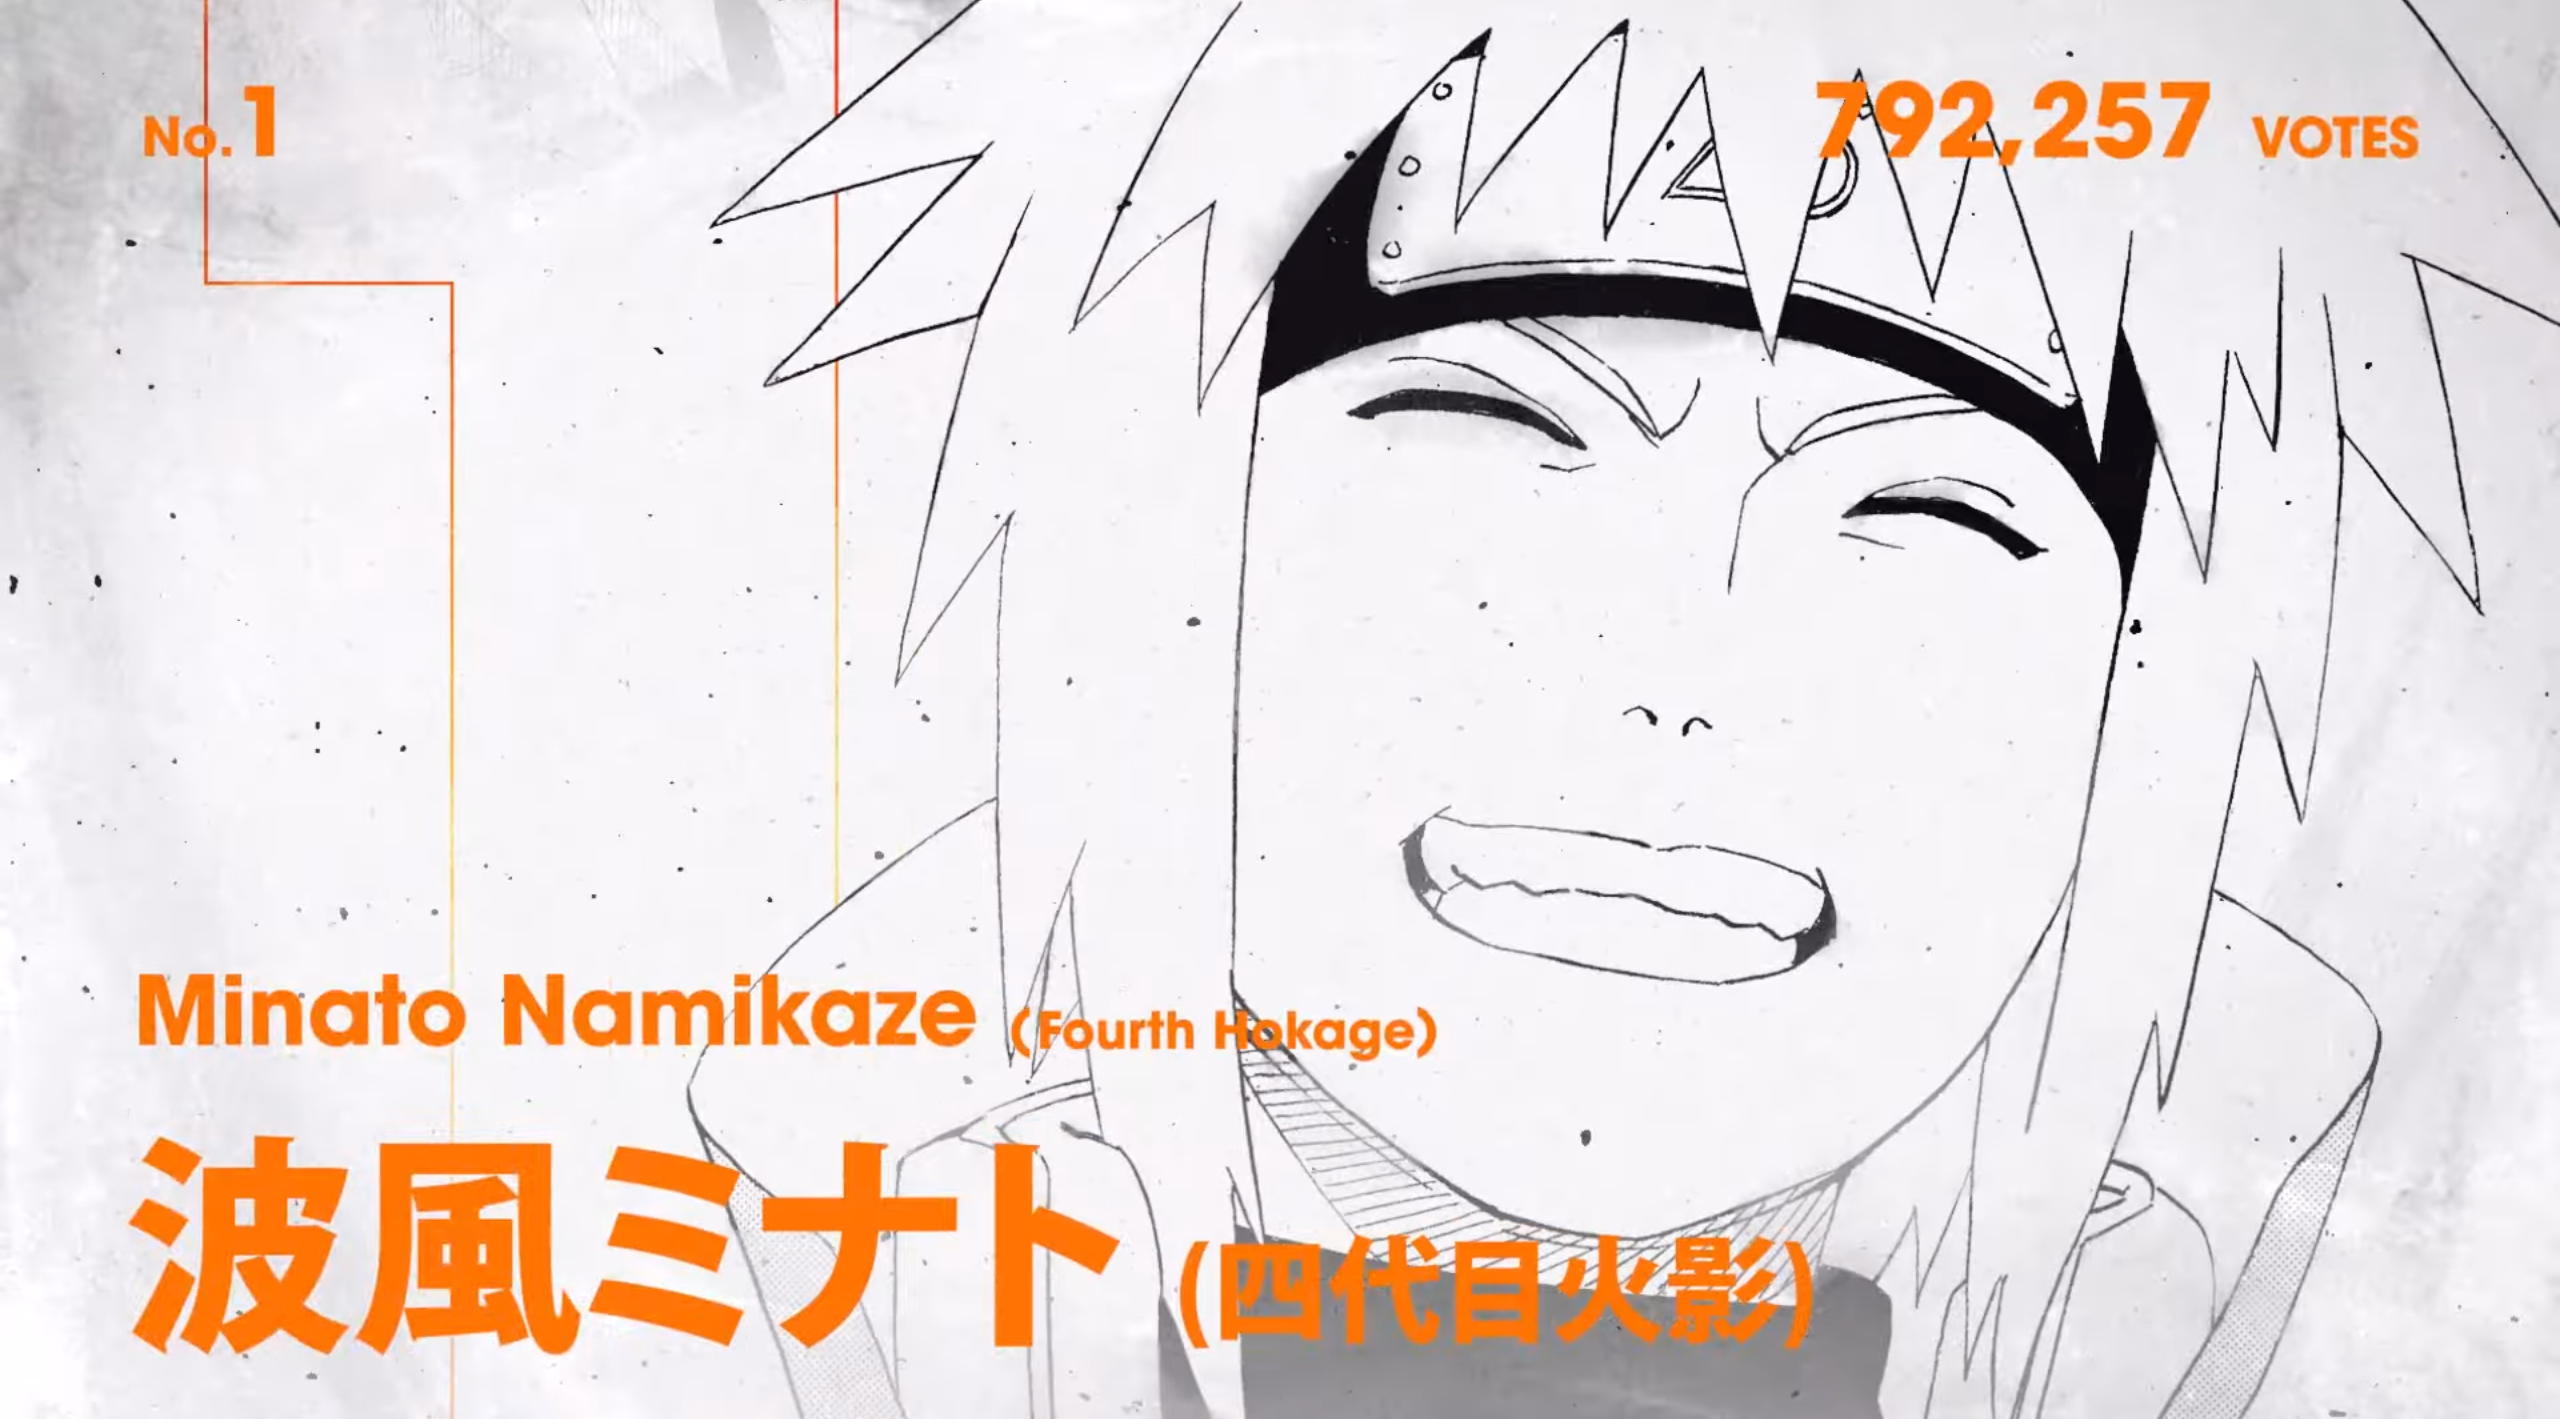 Minato Namikaze - Yondaime Hokage from Naruto